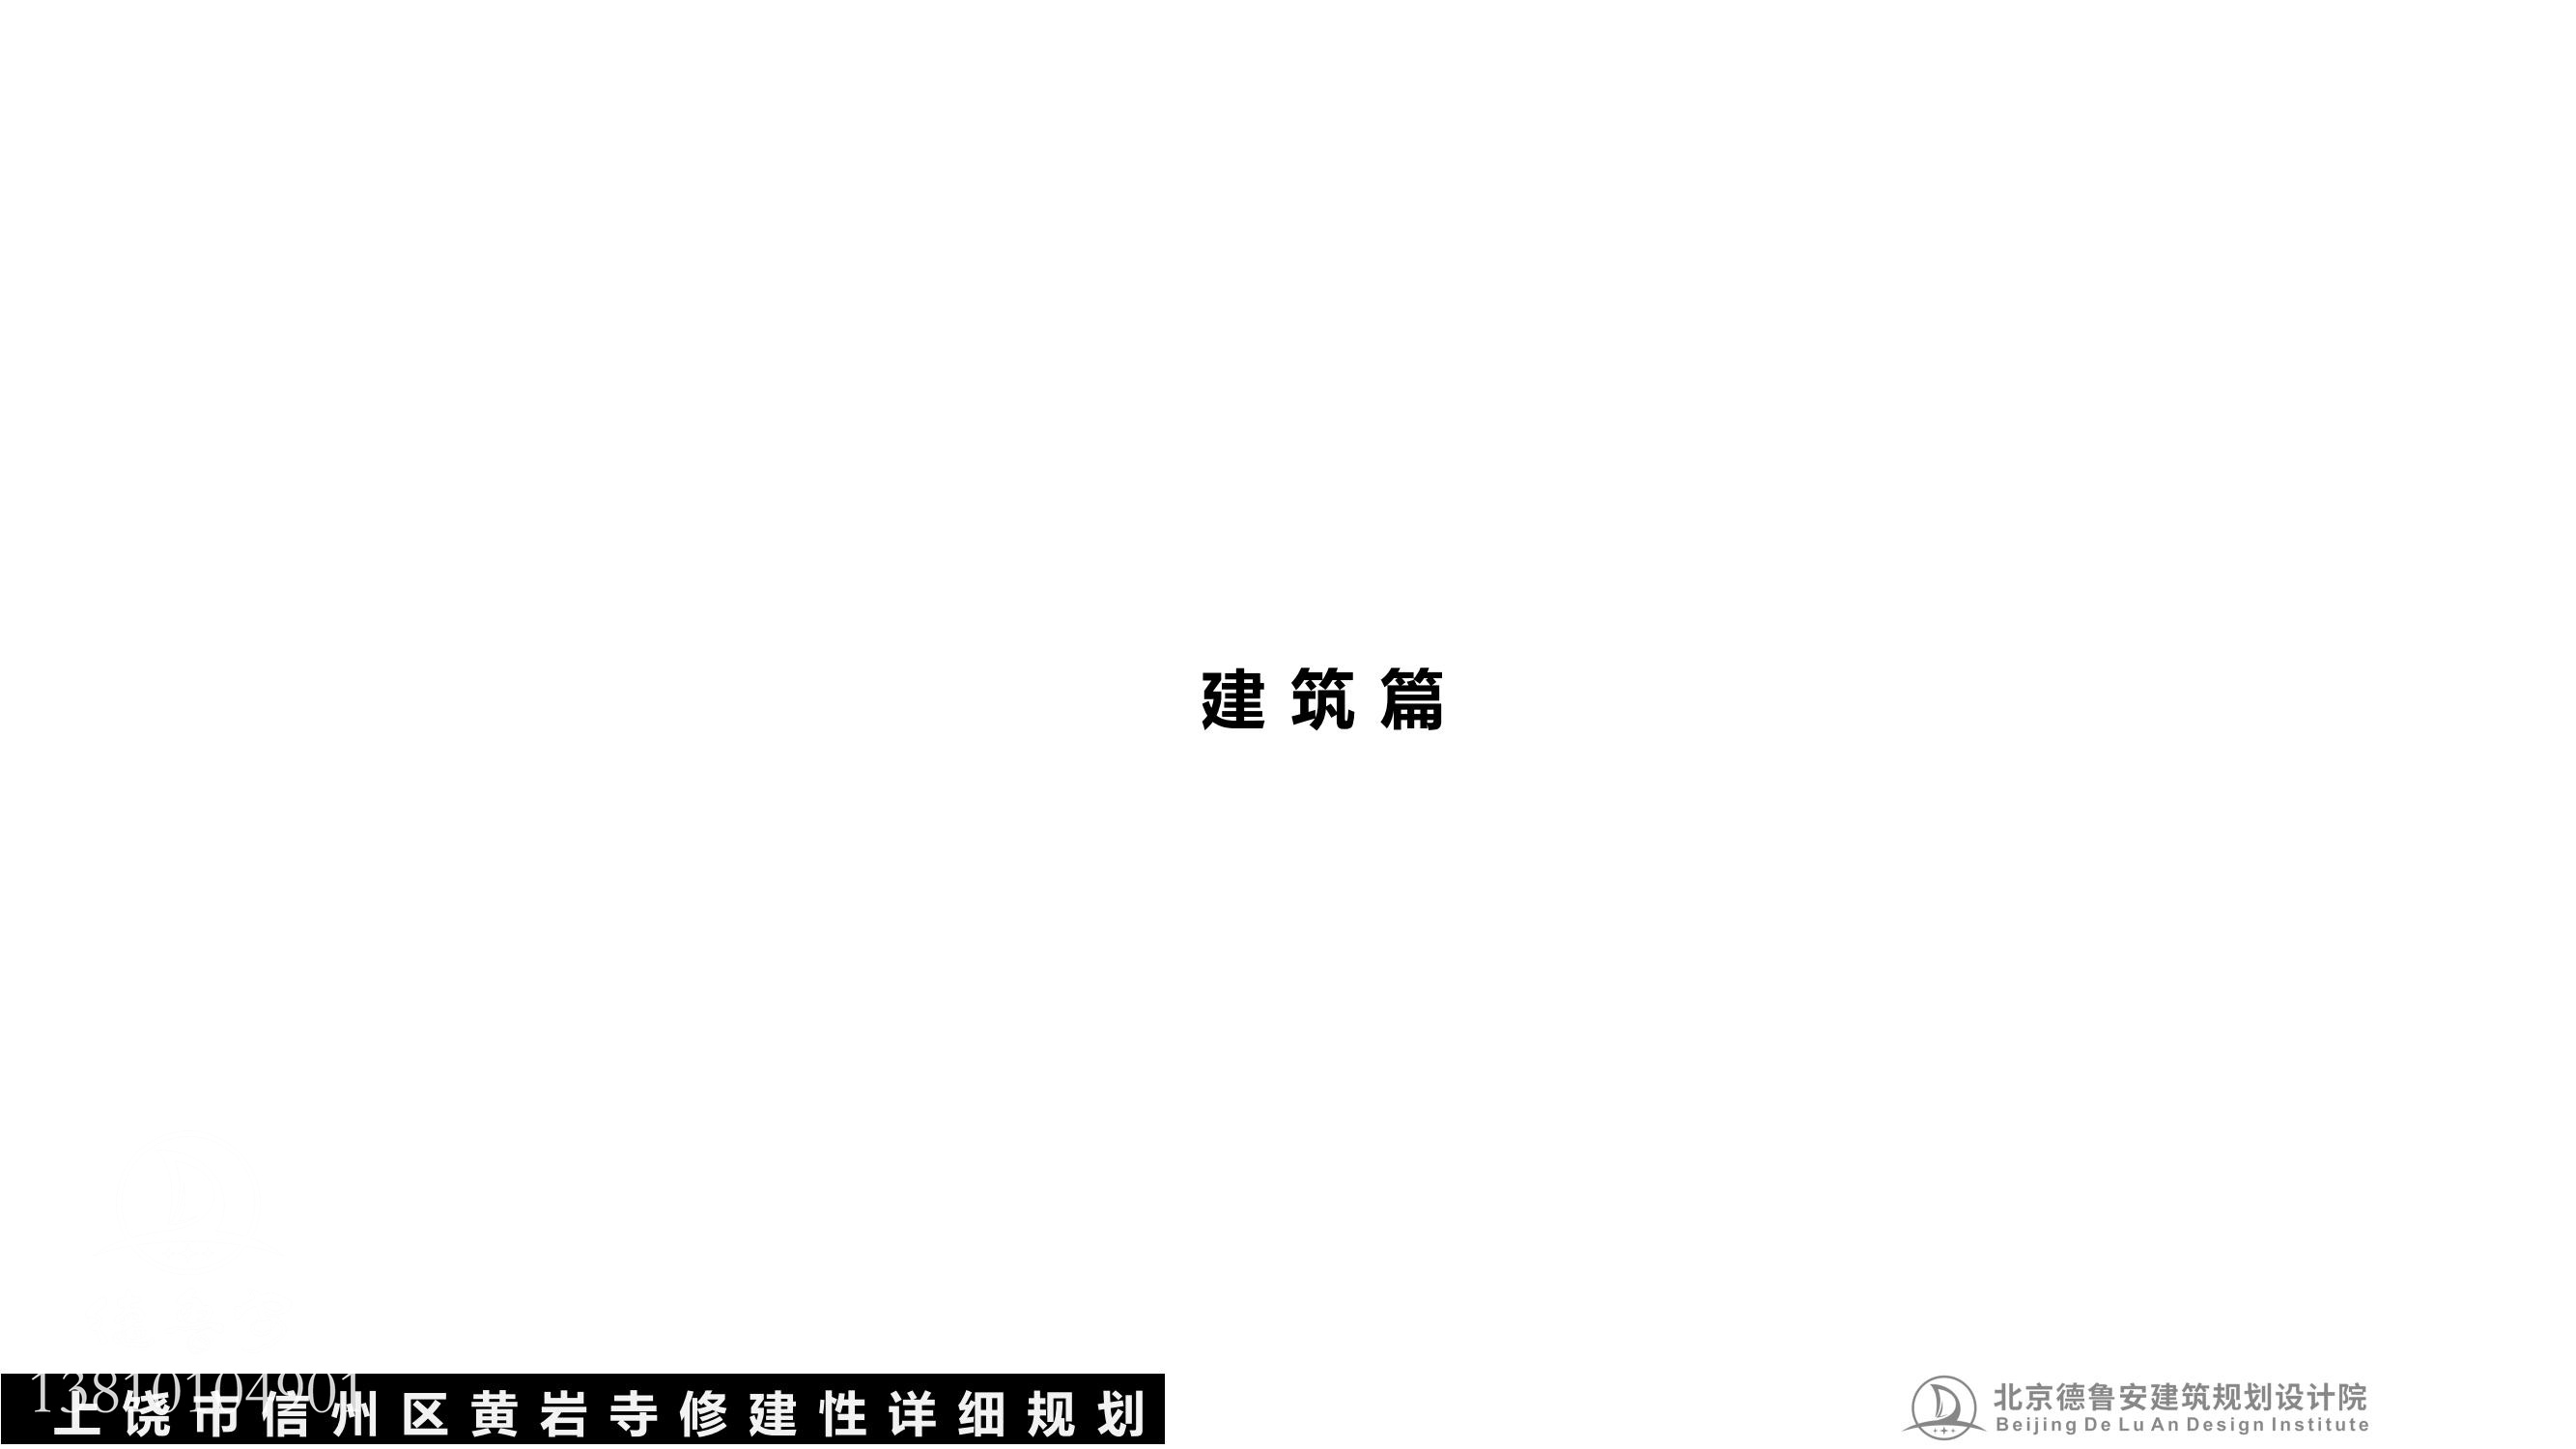 黄岩寺规划文本pdf(1)_50.jpg